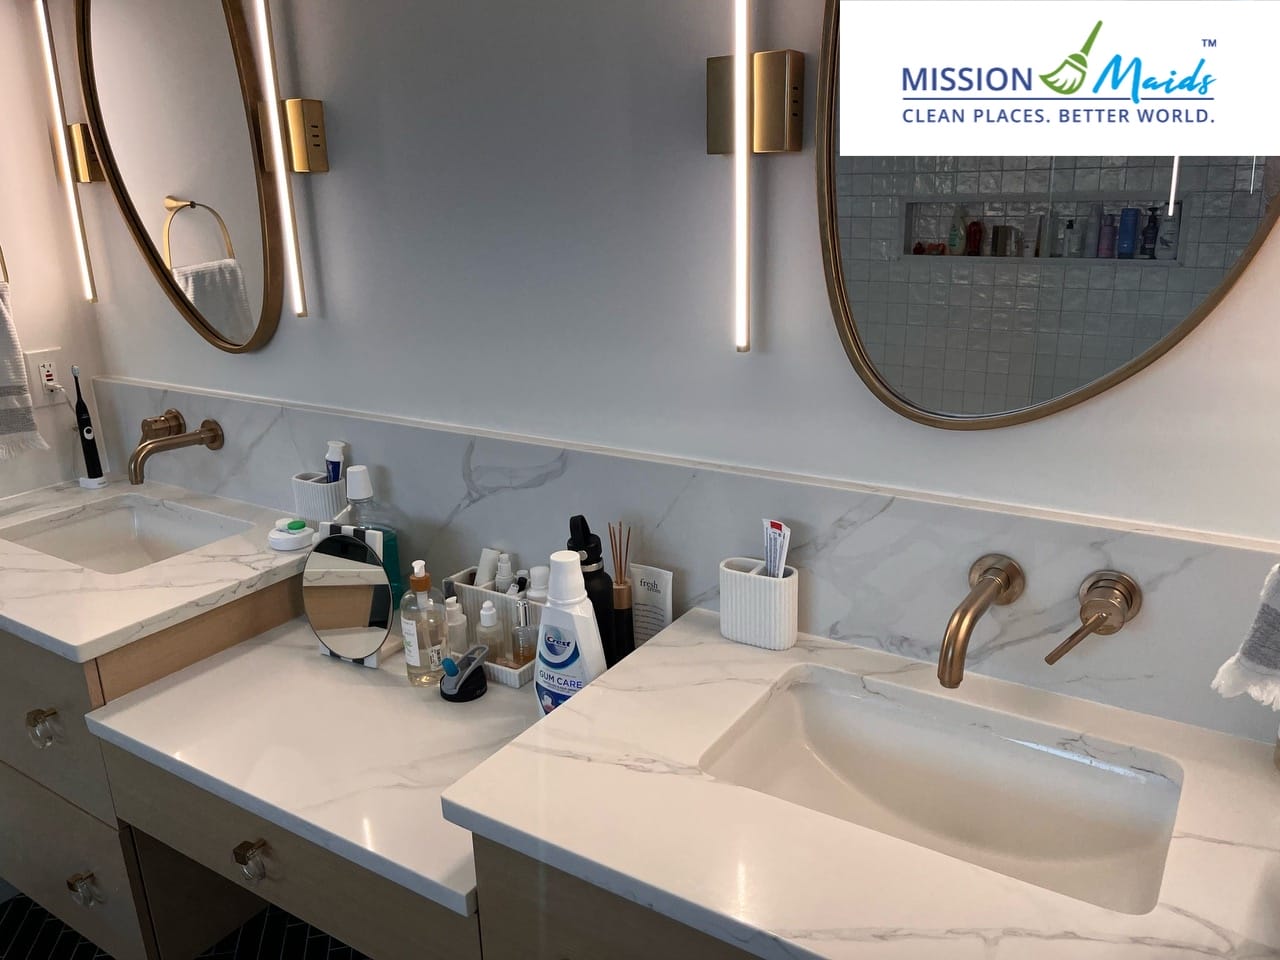 Standard House Cleaning - Clean bathroom vanities